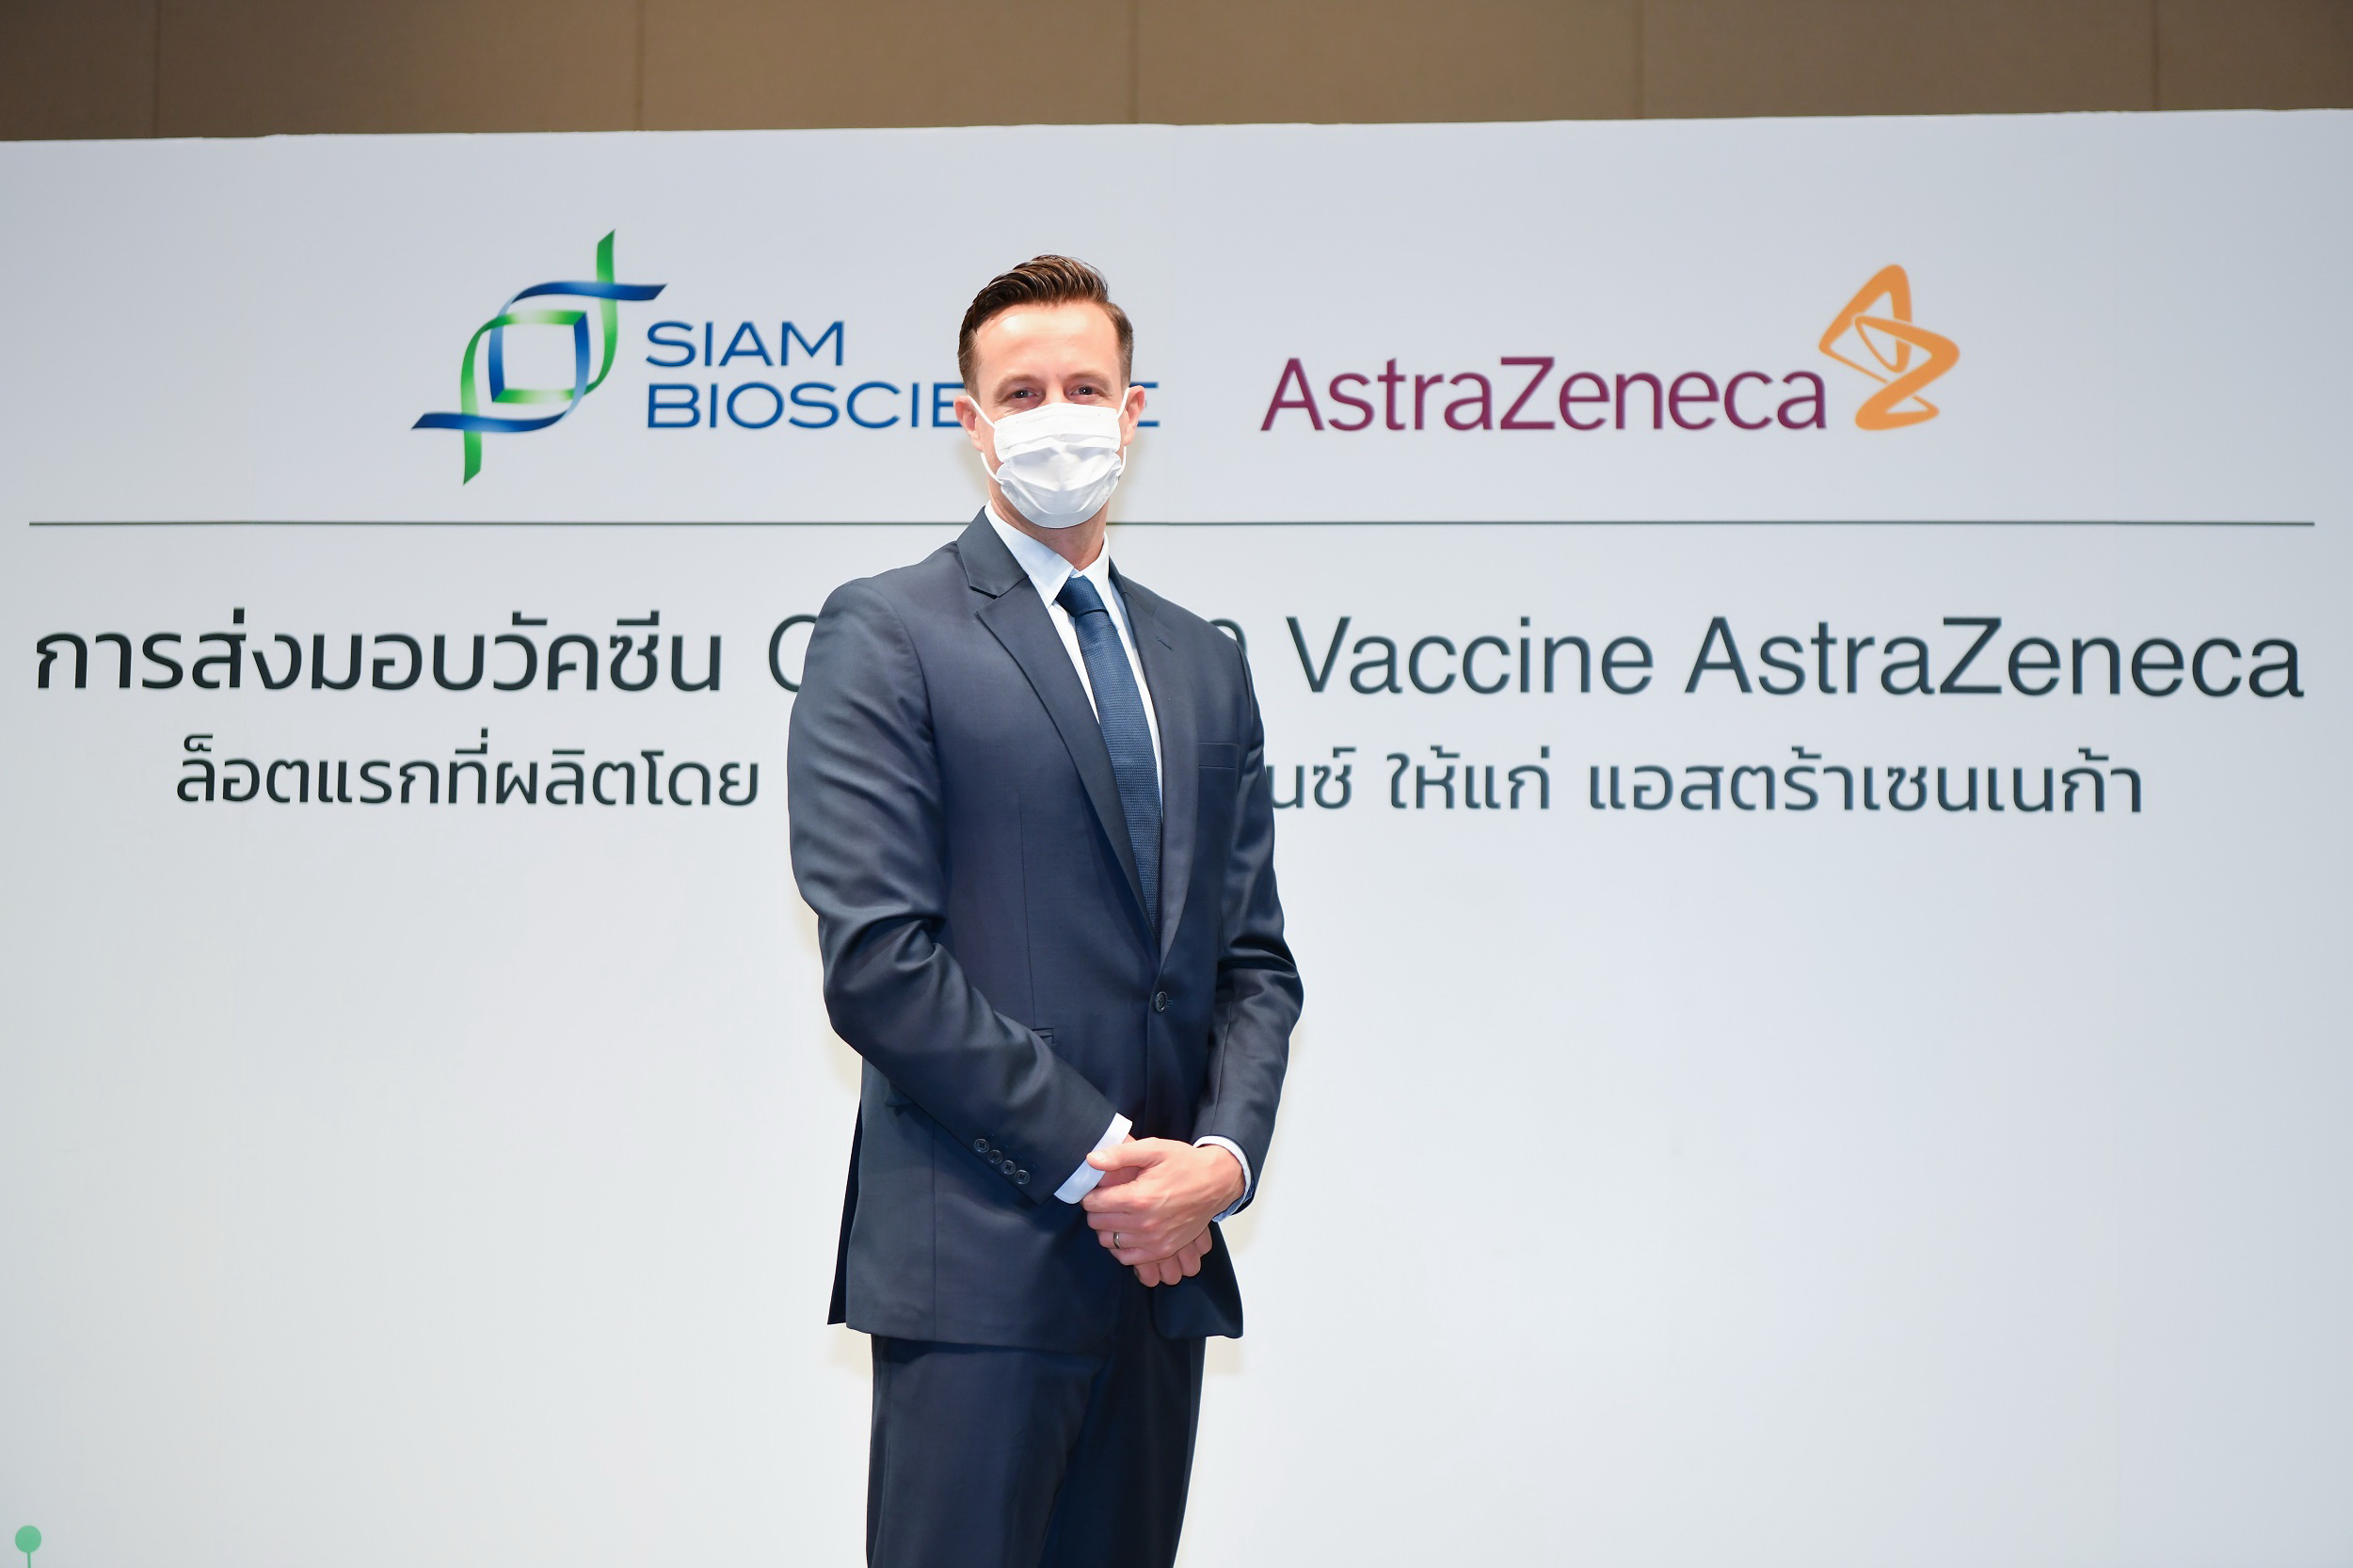 แอสตร้าเซนเนก้า รับมอบวัคซีนโควิด-19 ผลิตในไทย โดยสยามไบโอไซเอนซ์ล็อตแรกตามกำหนด  - ThaiPublica